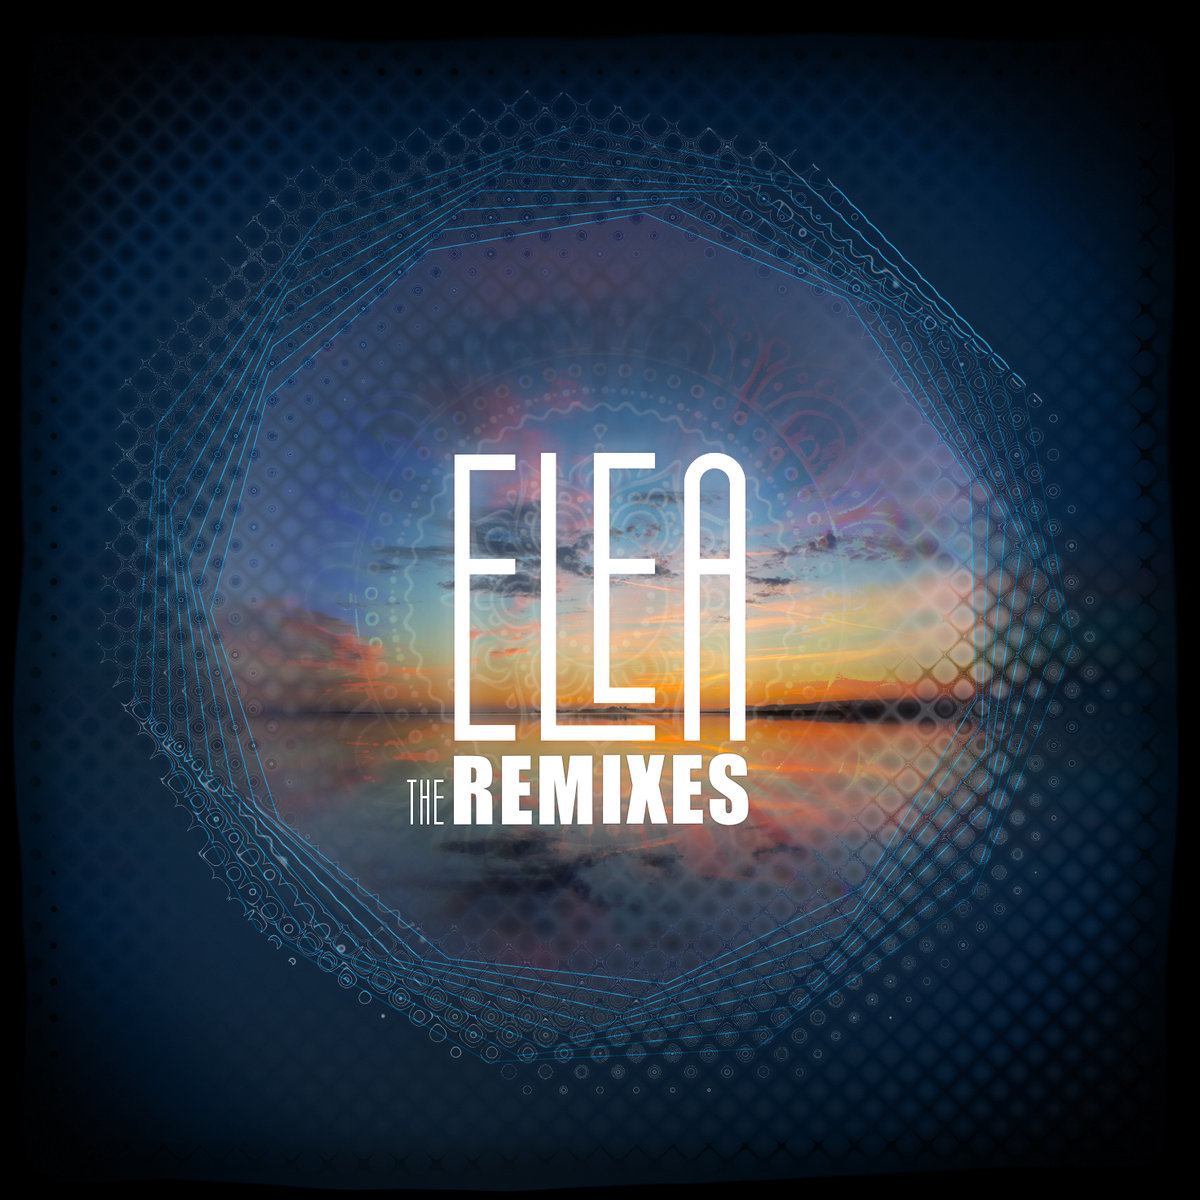 Elea – The Remixes (2019) [FLAC 24bit/44,1kHz]